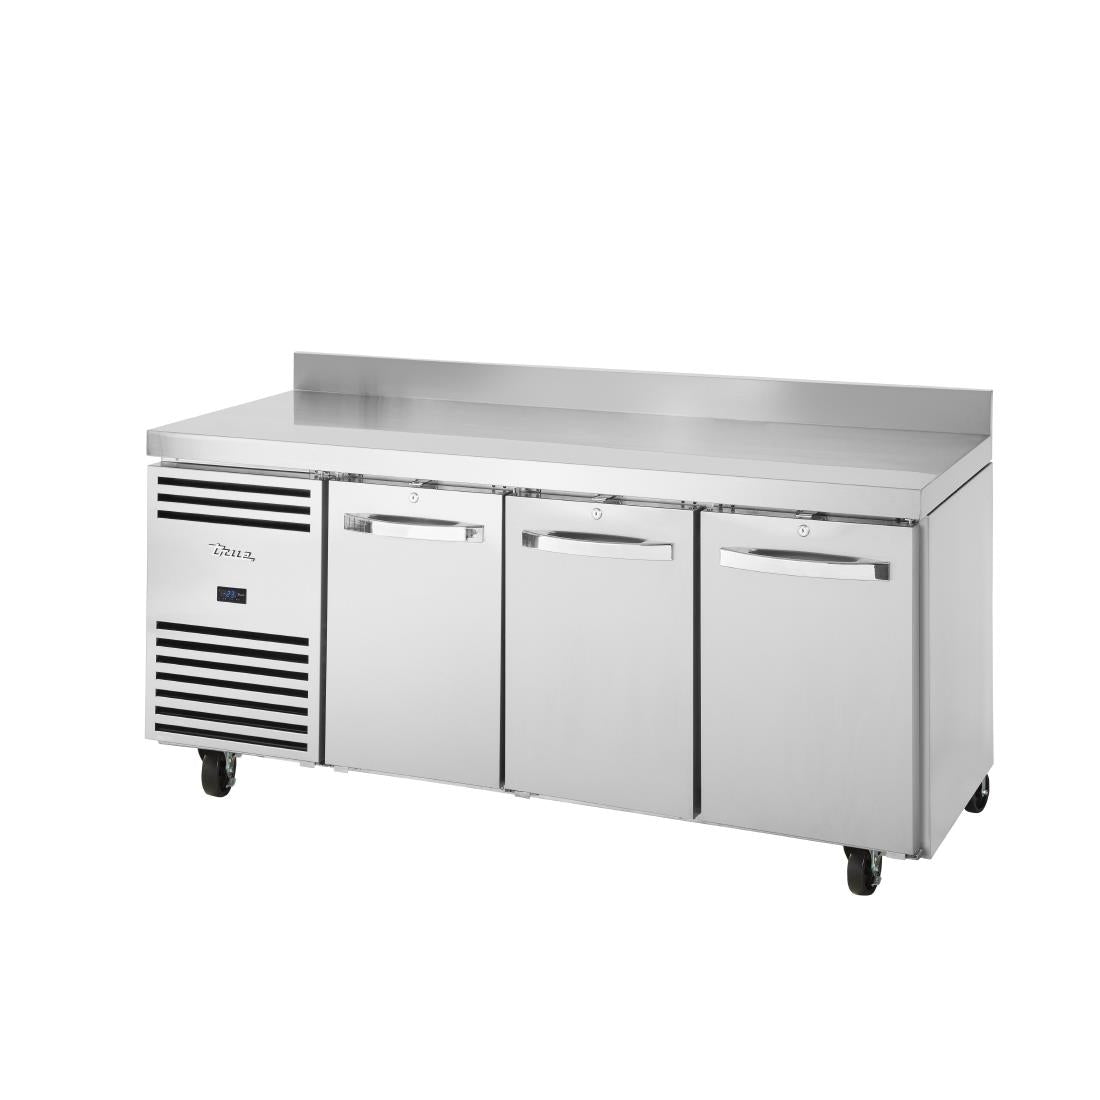 FB019 True 3 Door Counter Freezer TCF1/3 JD Catering Equipment Solutions Ltd